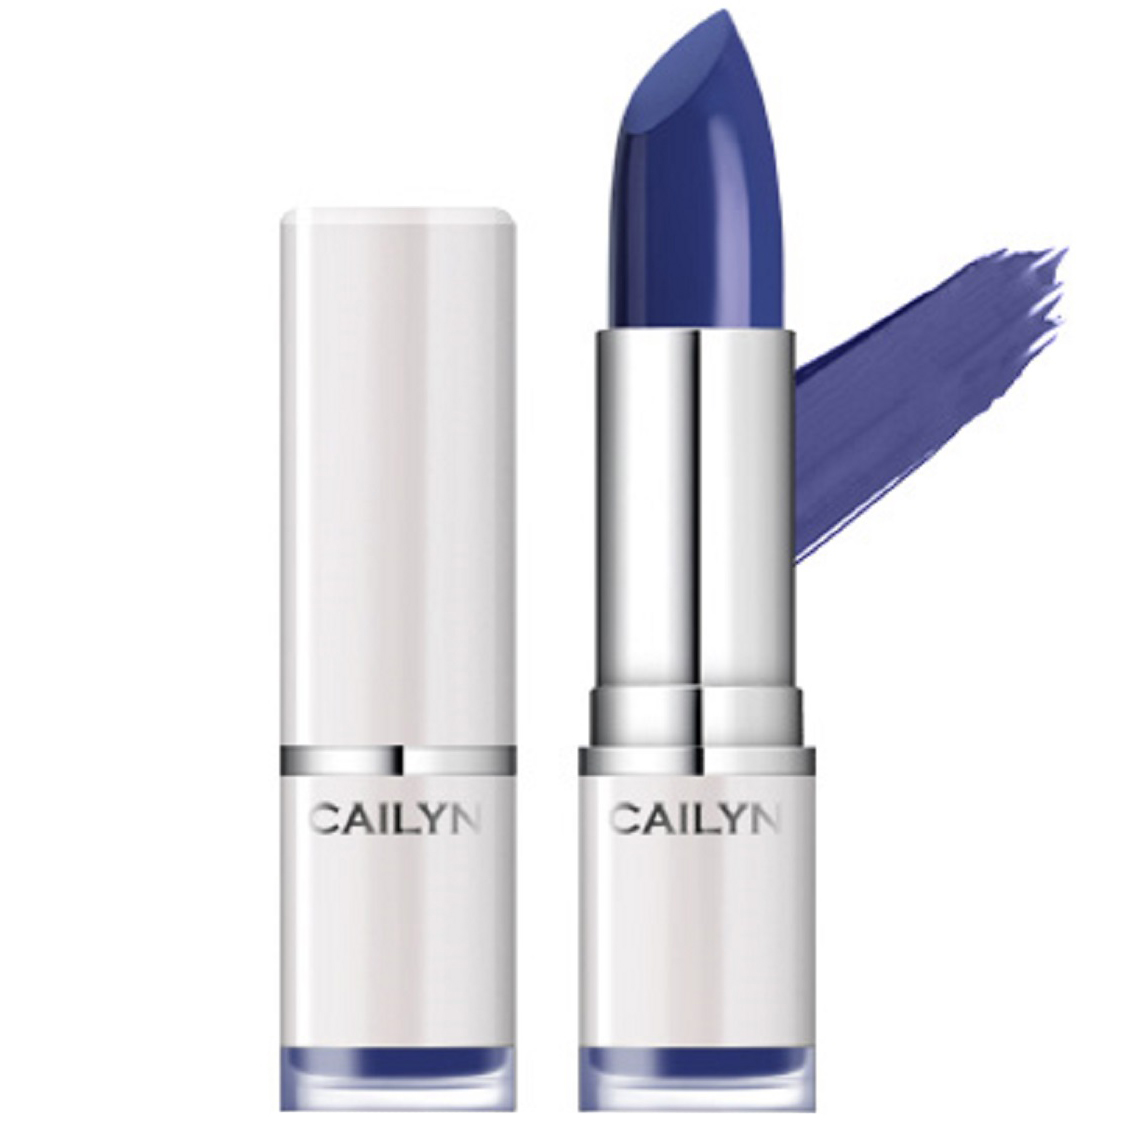 Bilde av Cailyn Pure Luxe Lipstick, 5 G Cailyn Cosmetics Leppestift